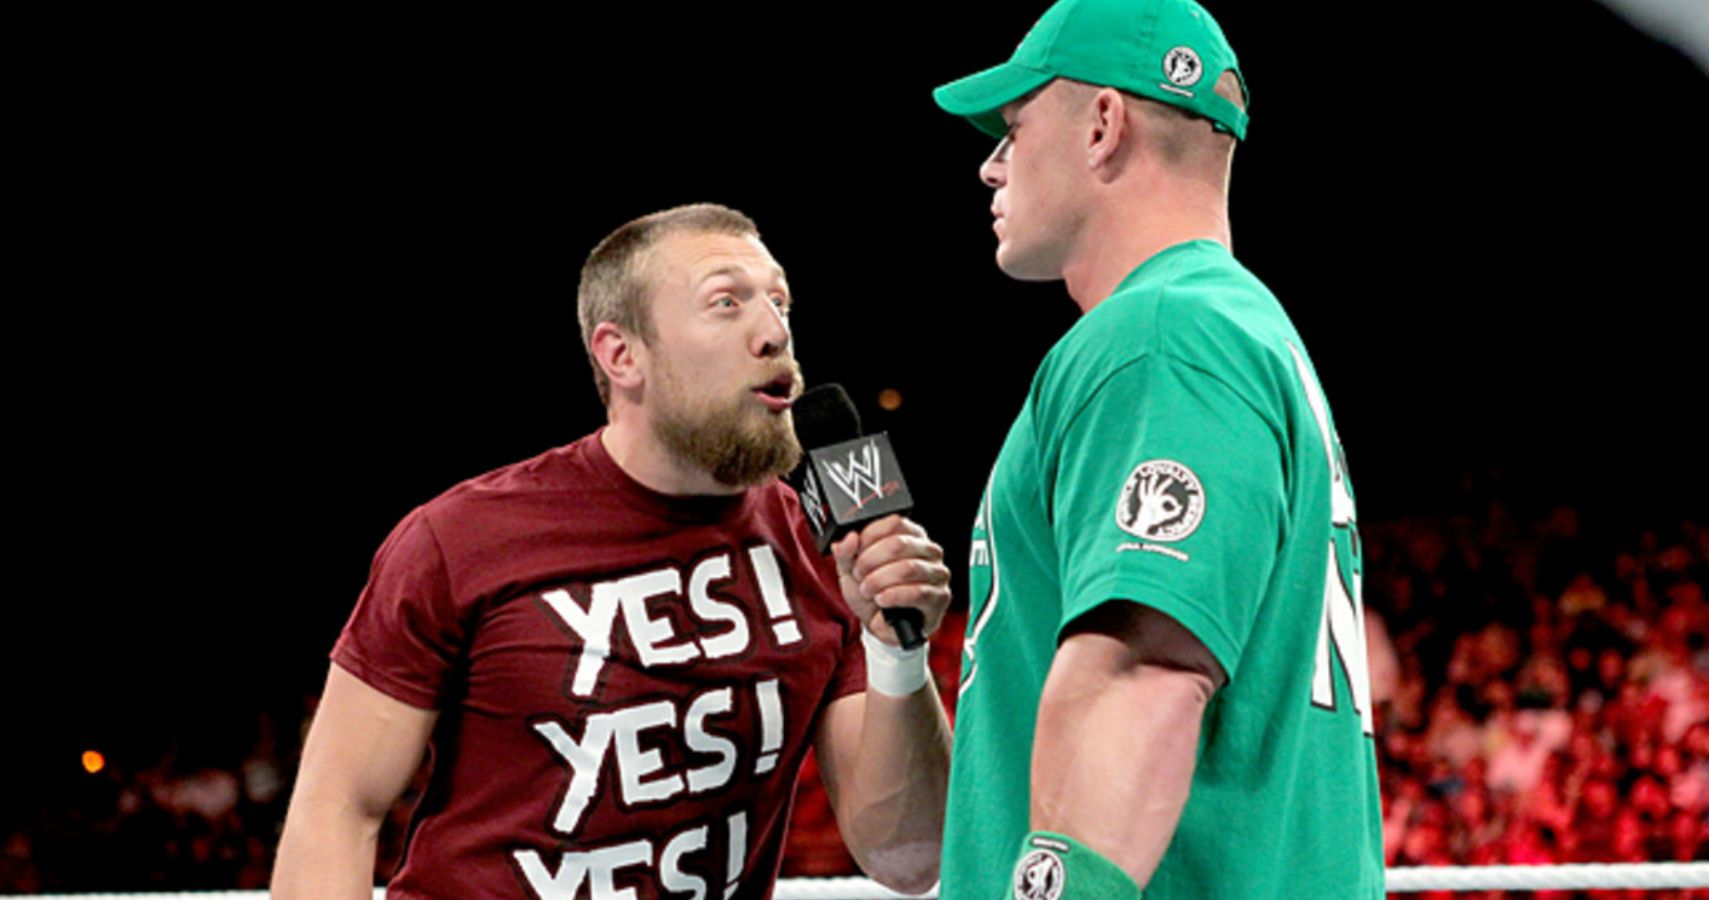 Bryan And Cena 